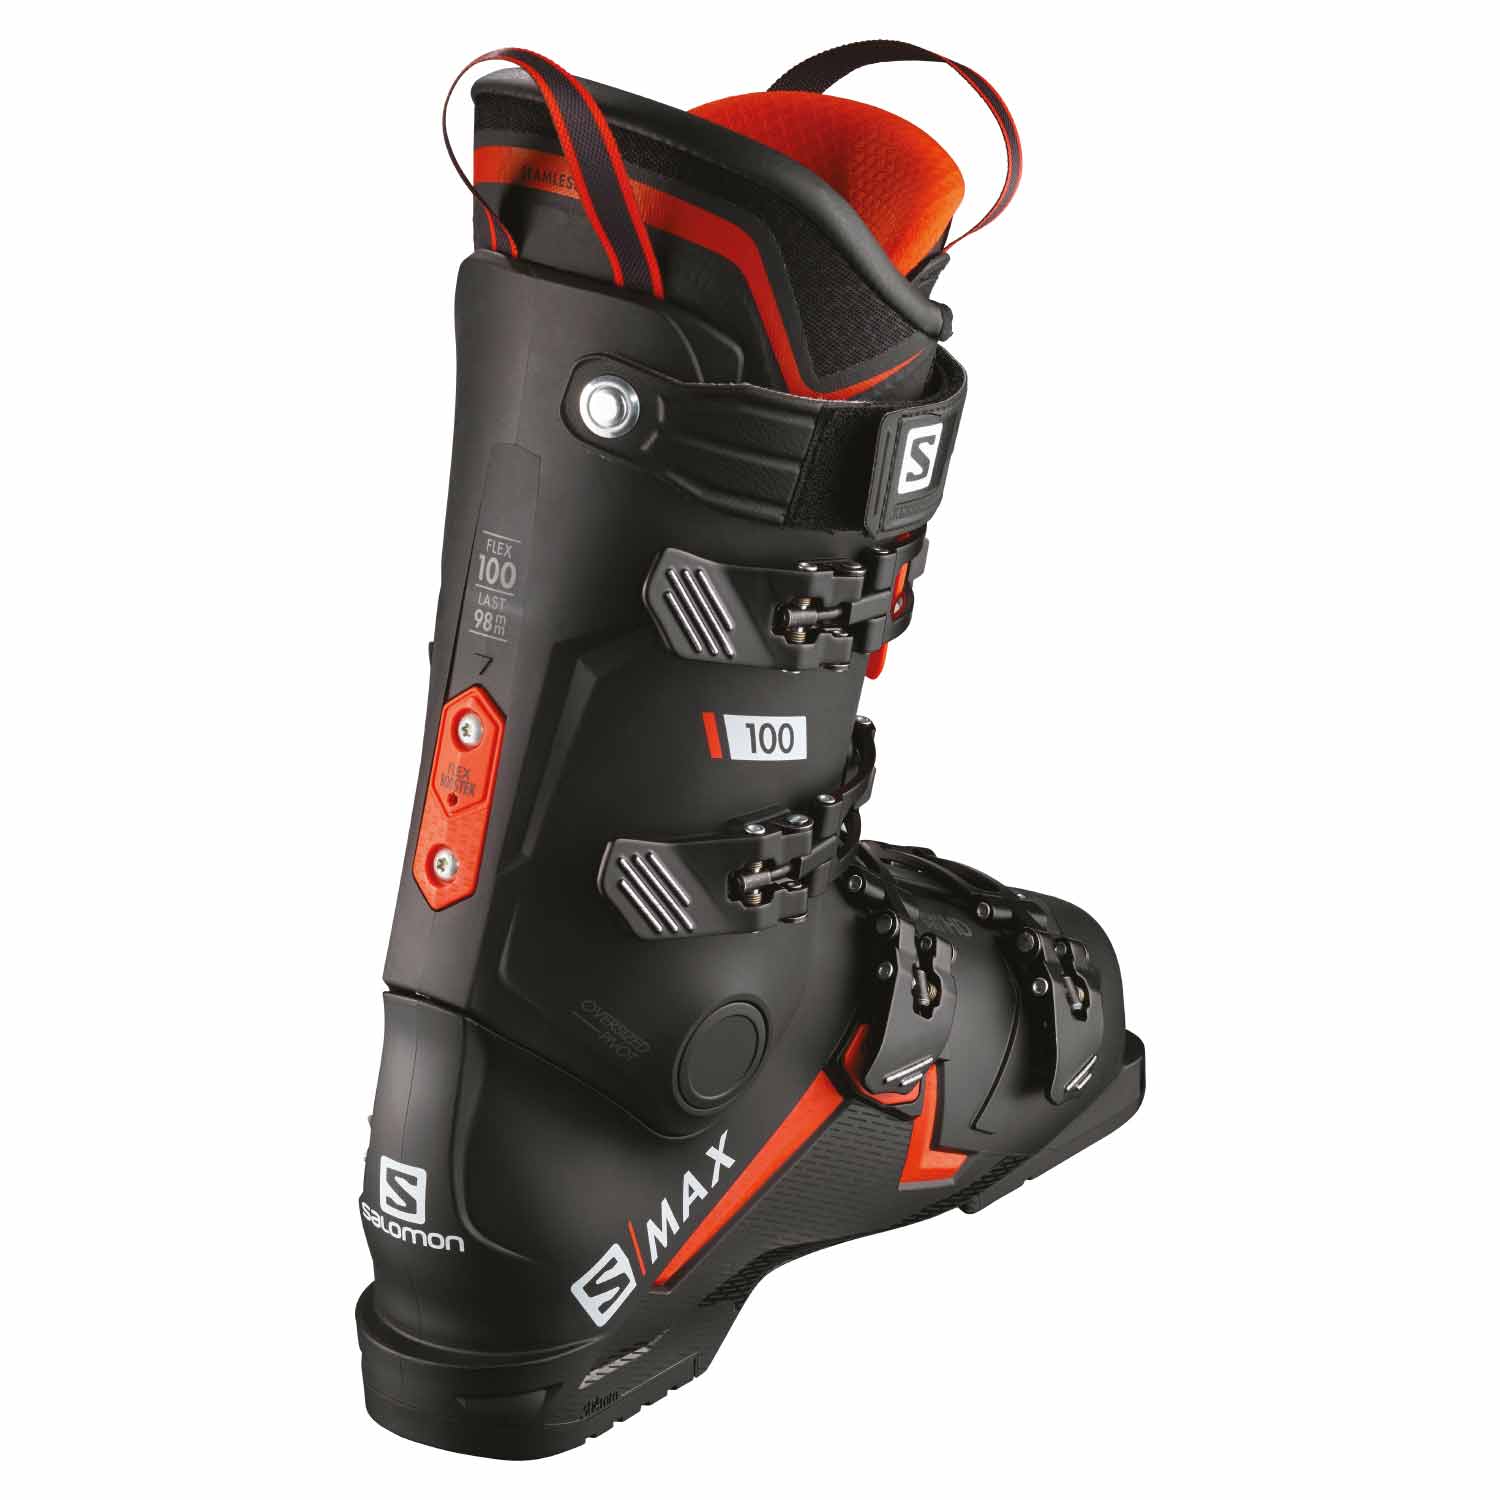 Salomon S Max 100 Ski Boot 2020